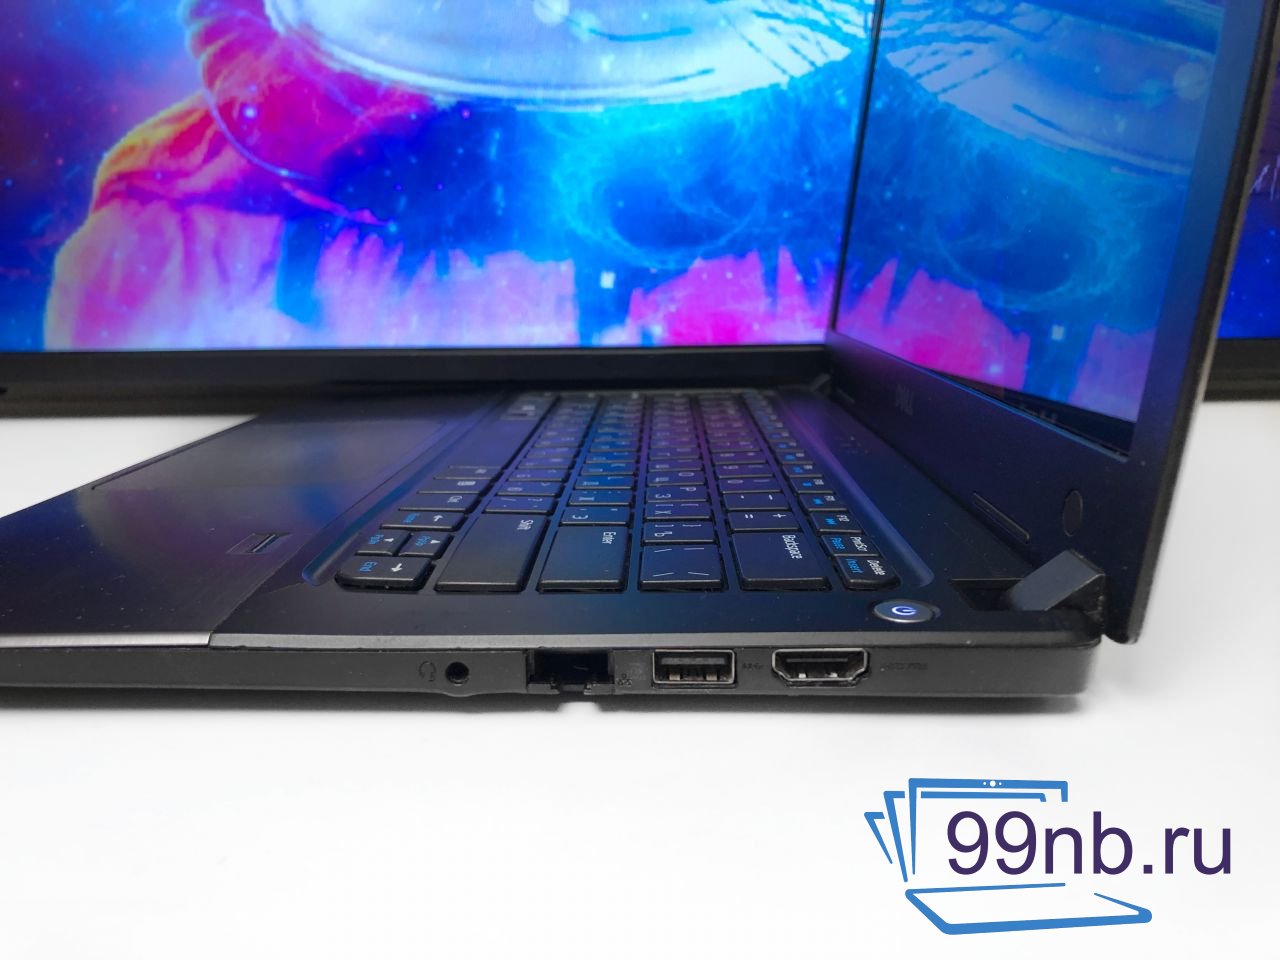  Лёгкий ноутбук Dell Vostro в металле Intel+Geforce